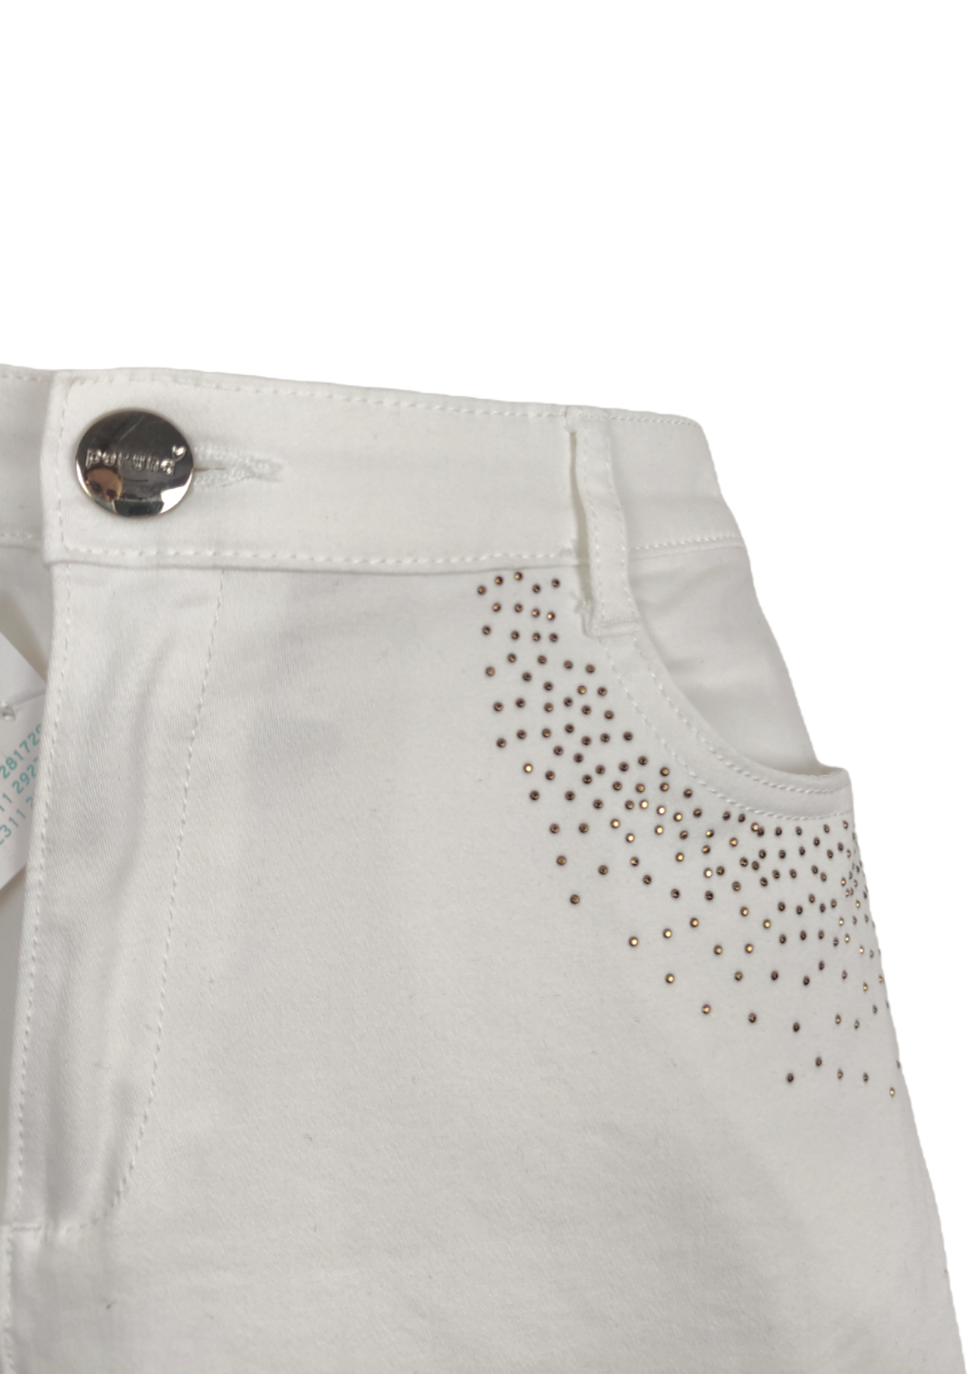 Ελαστικό Γυναικείο Παντελόνι PERUNA σε Λευκό Χρώμα (Large)